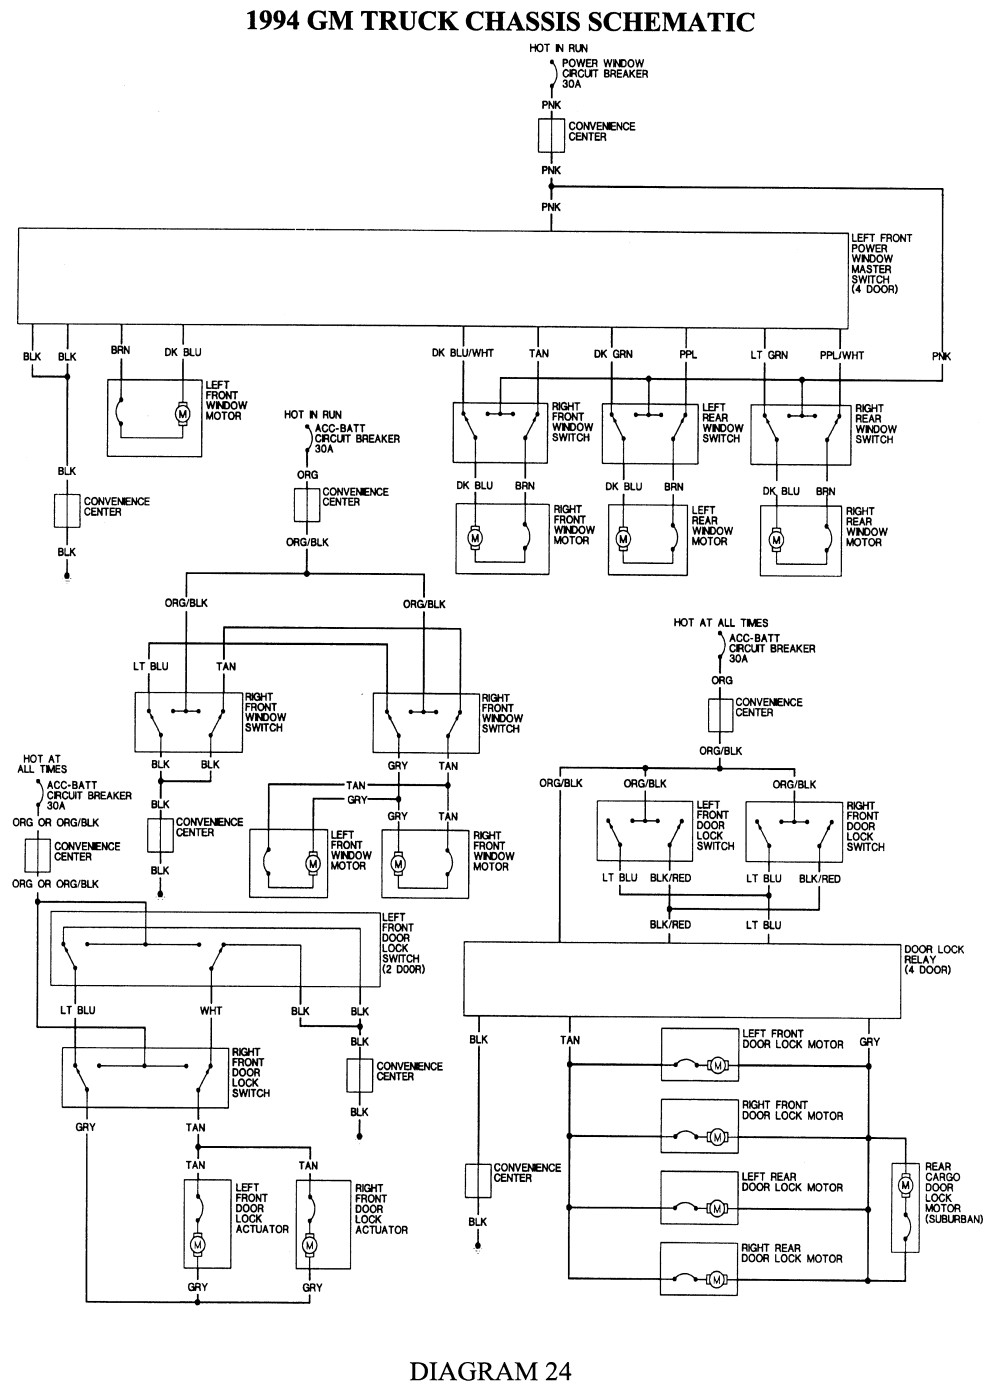 Repair Guides Wiring Diagrams Wiring Diagrams Autozone C1500 Wiring Diagram 2 C1500 Wiring Diagram